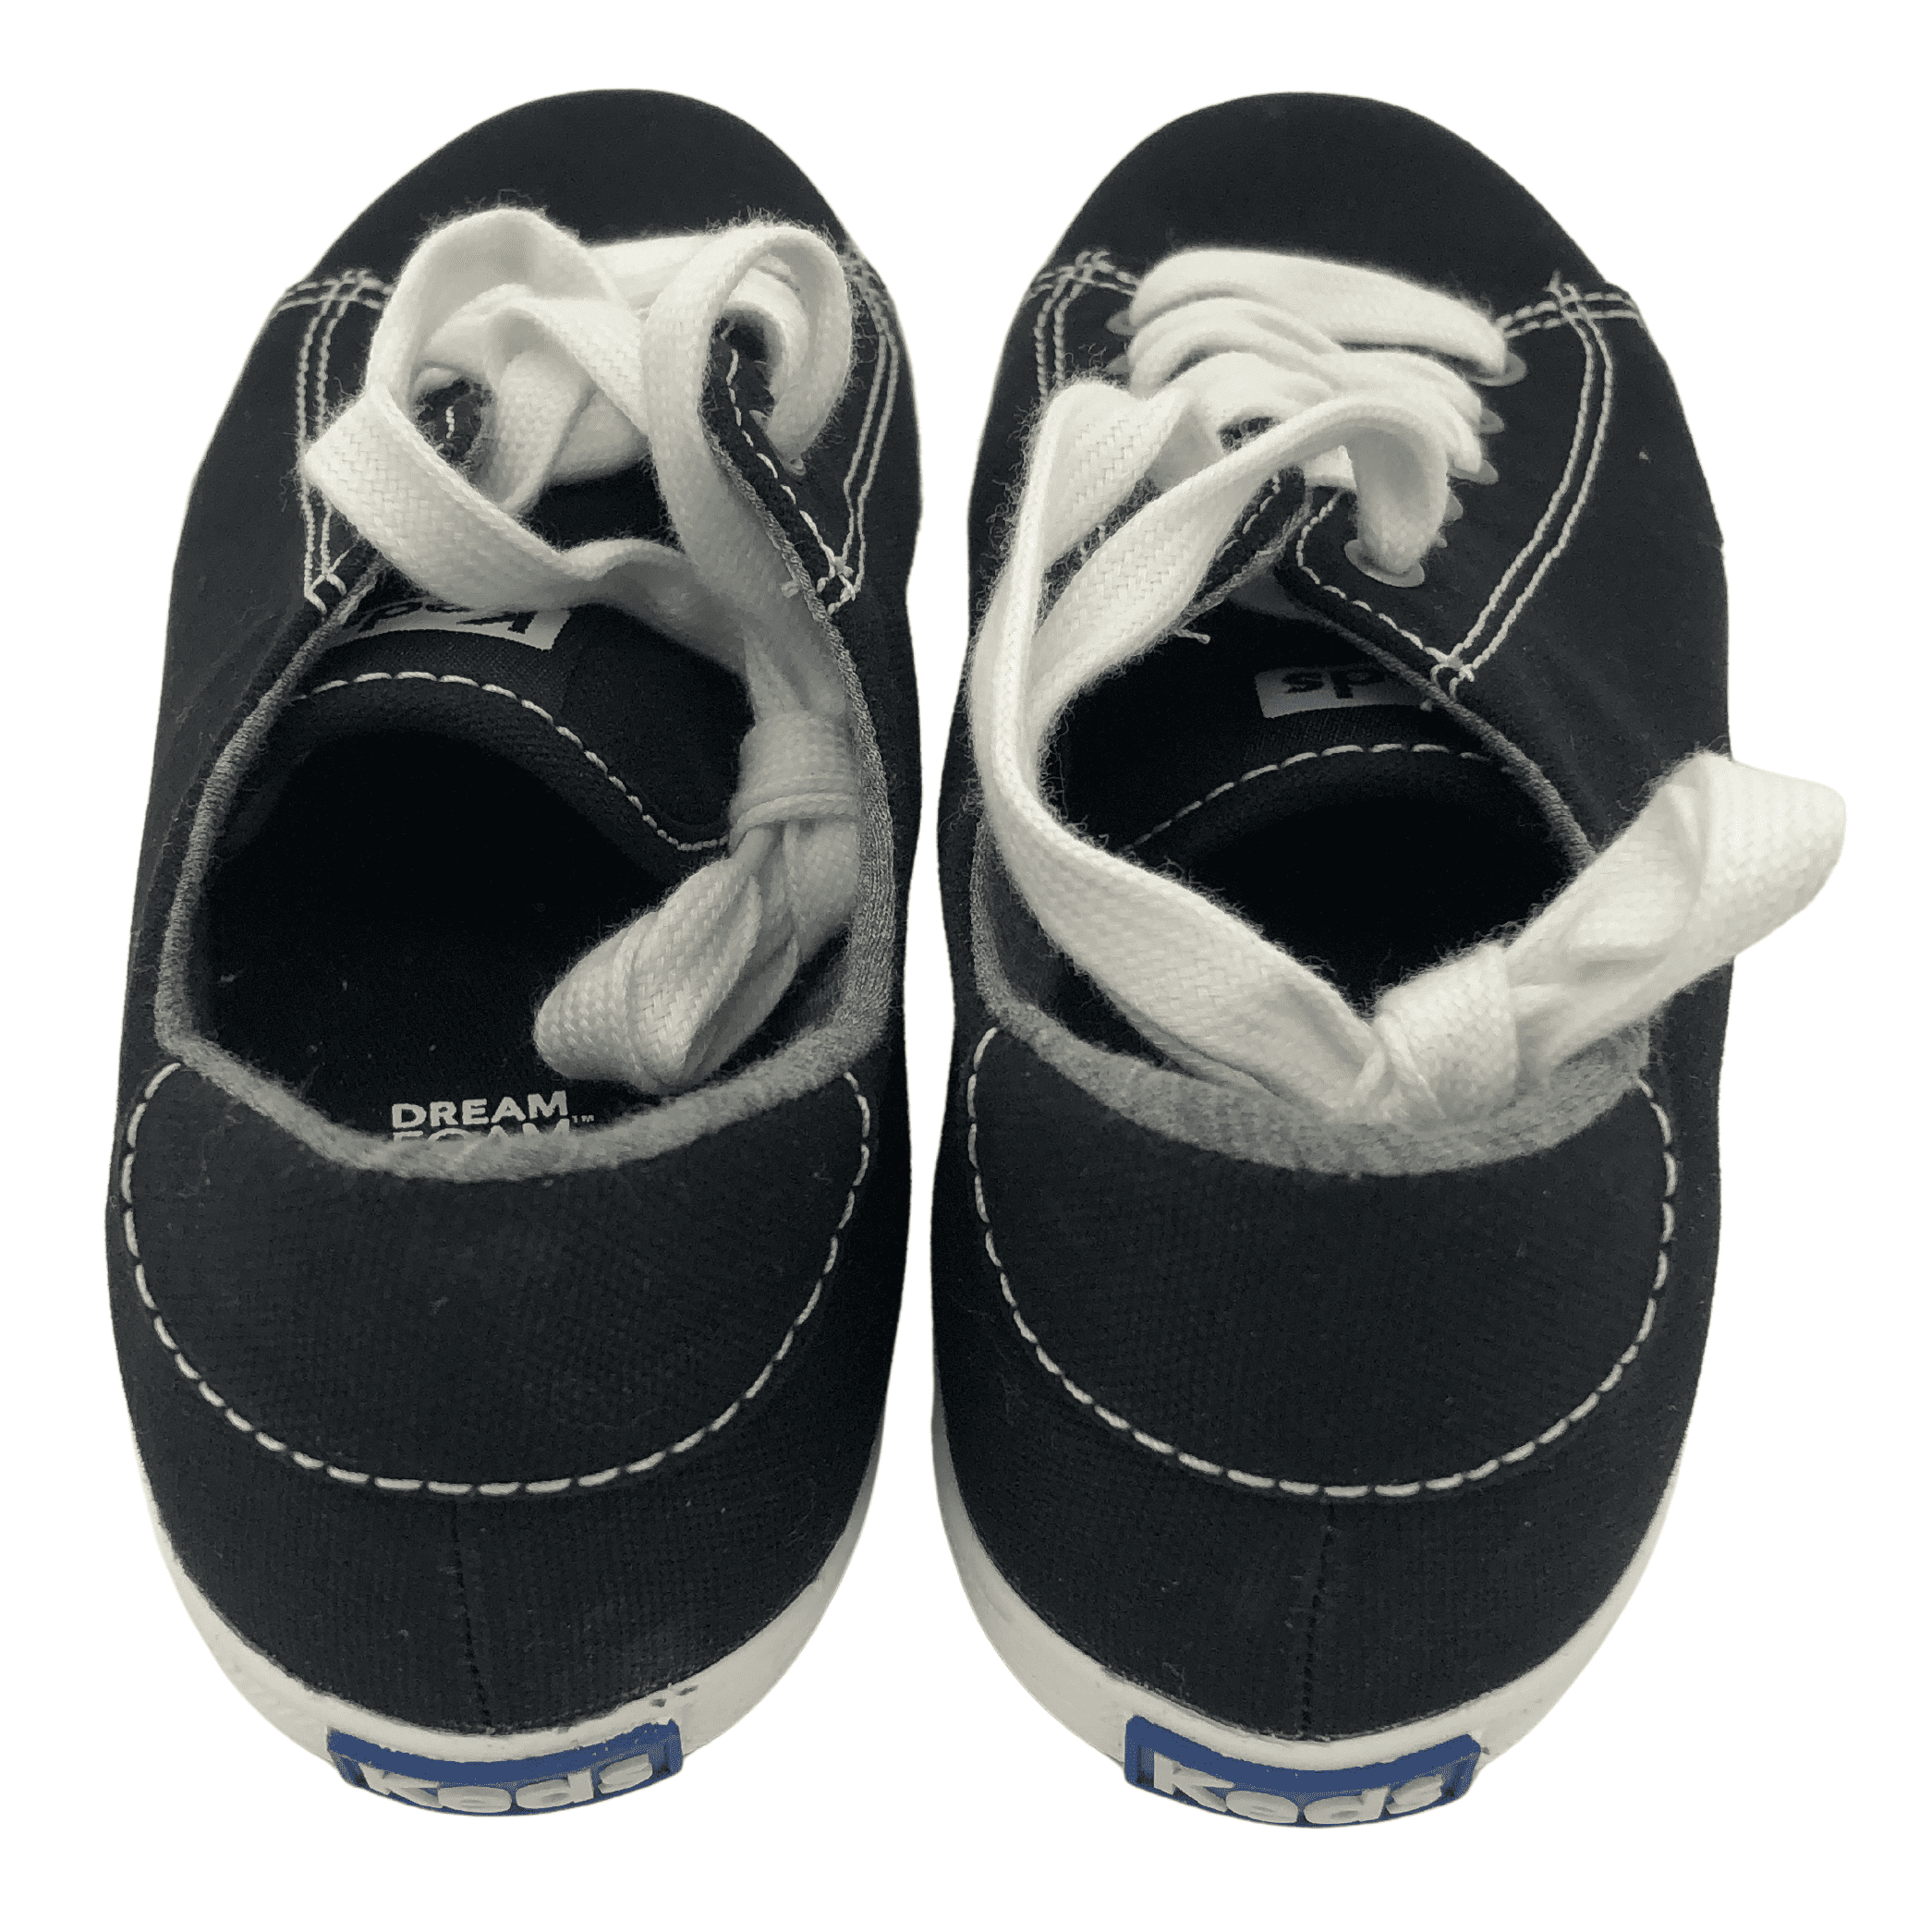 Keds Ladies Canvas Shoes / Dream Foam Insole / Size: 5 / Black